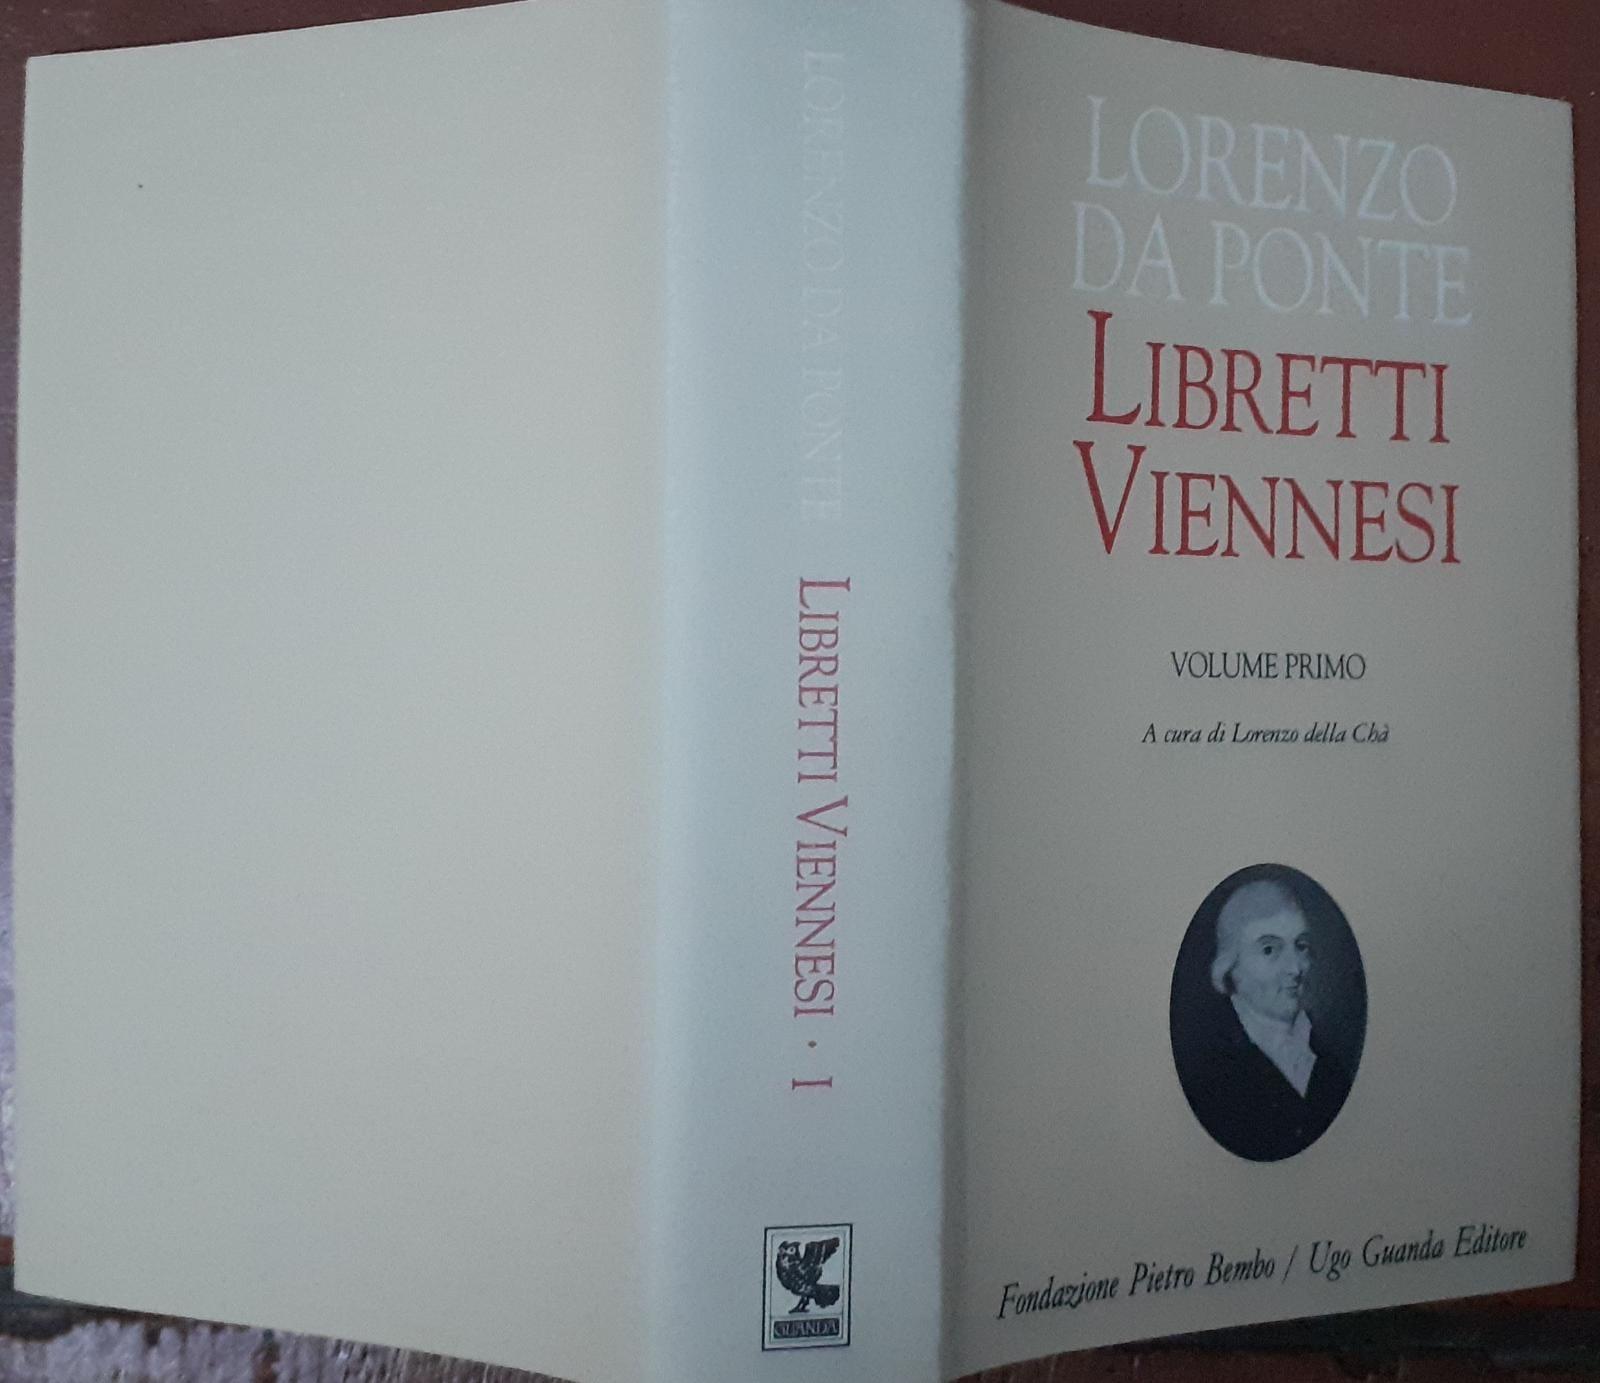 Libretti viennesi Libro 1 - Da Ponte Lorenzo